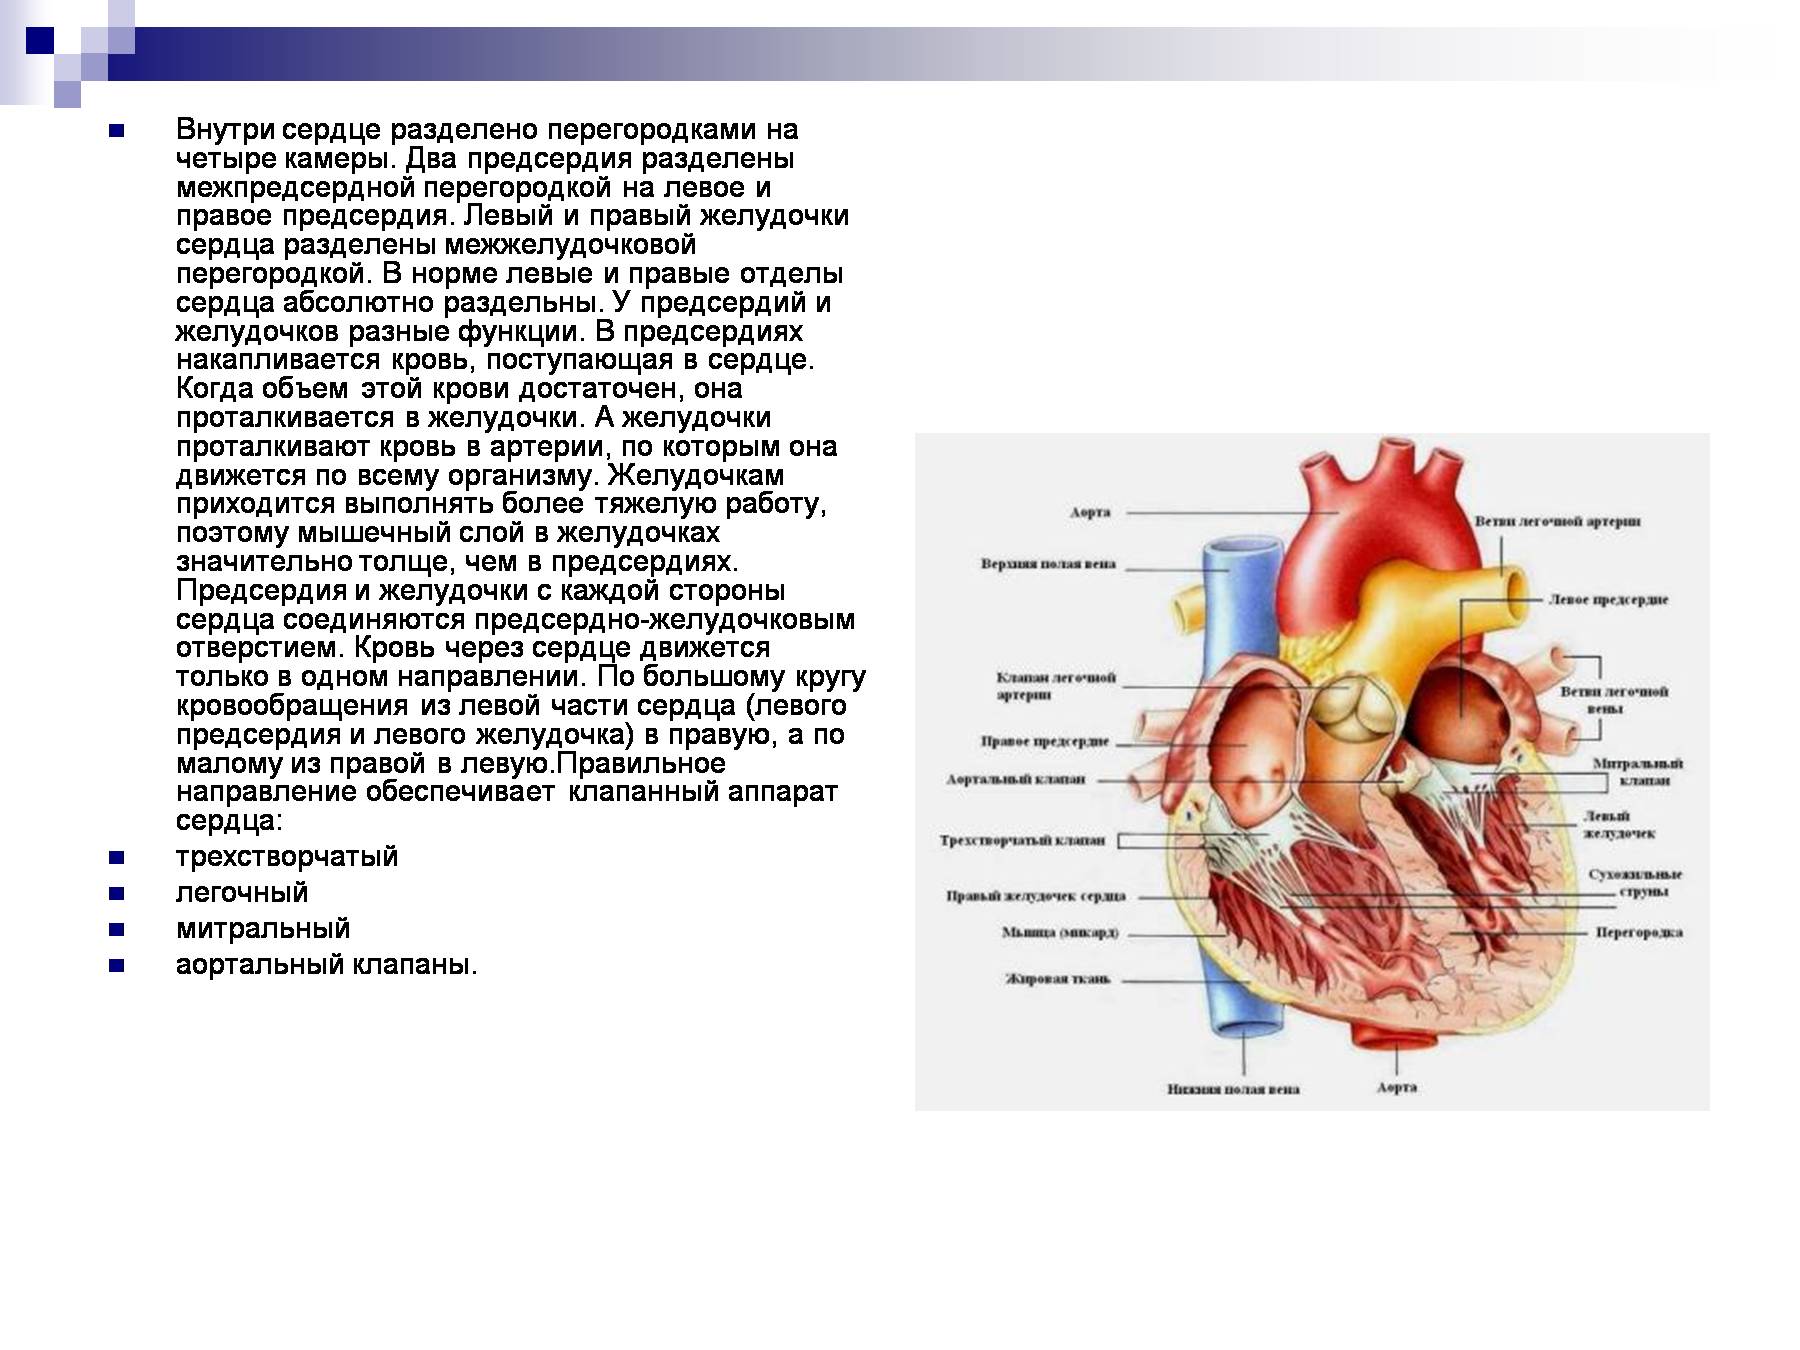 Правый желудочек функции. Межпредсердная перегородка сердца строение. Строение межпредсердной перегородки сердца. Перегородка предсердий и желудочков сердца. Расширение левого предсердия (объем 88 мл).